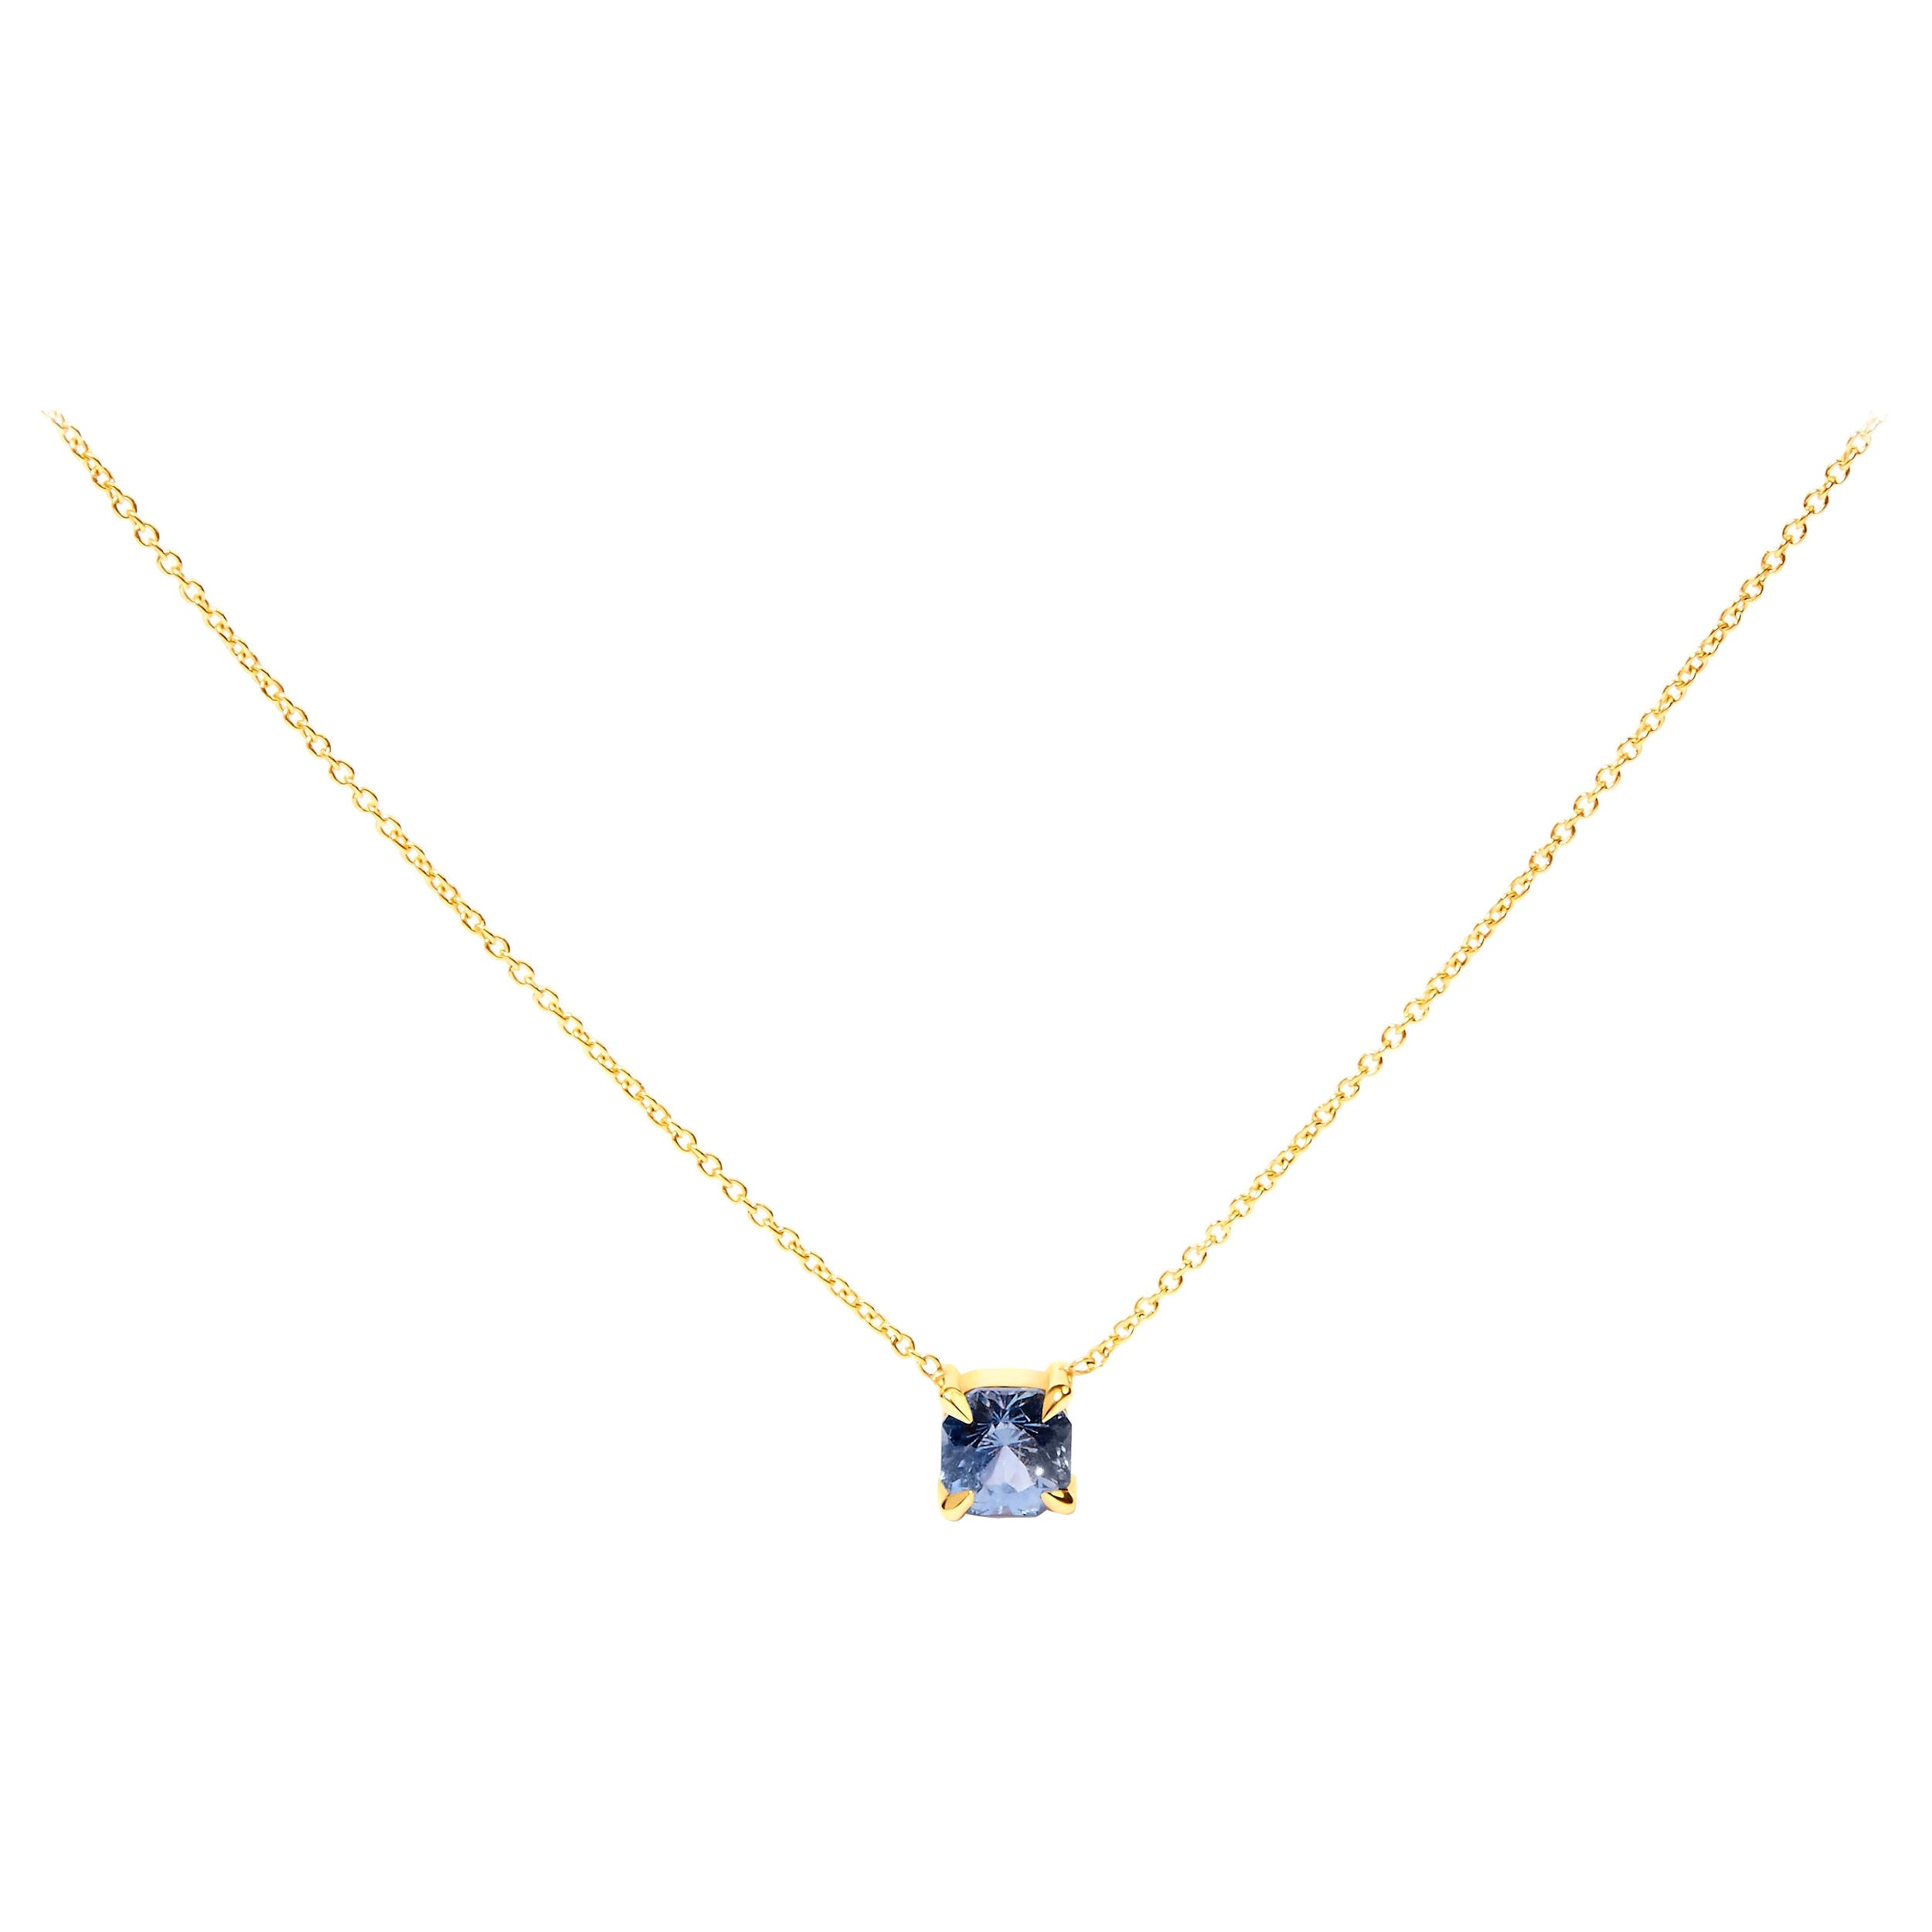 14K Yellow Gold 4/5 Carat Cushion Cut Blue Sapphire Solitaire Pendant Necklace